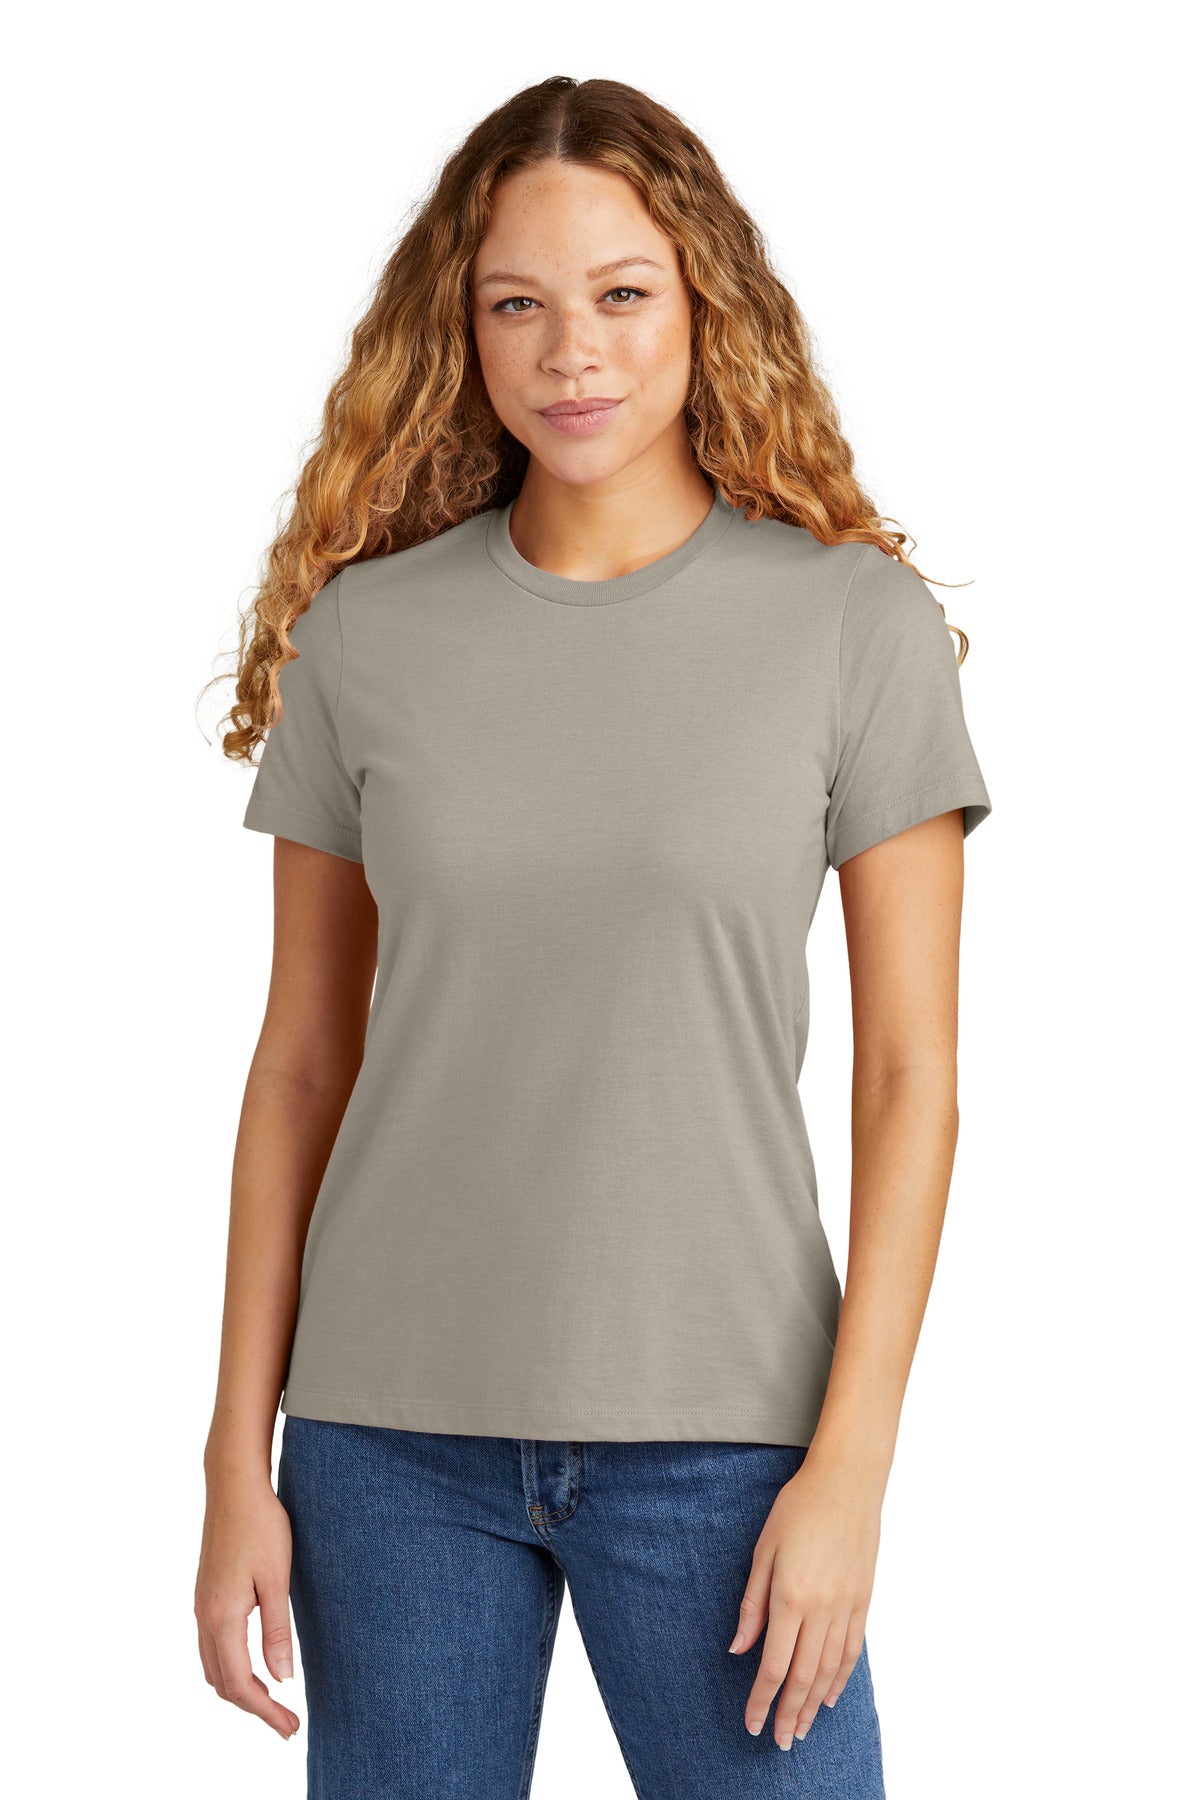 Gildan   Softstyle   Women's CVC T-Shirt 67000L